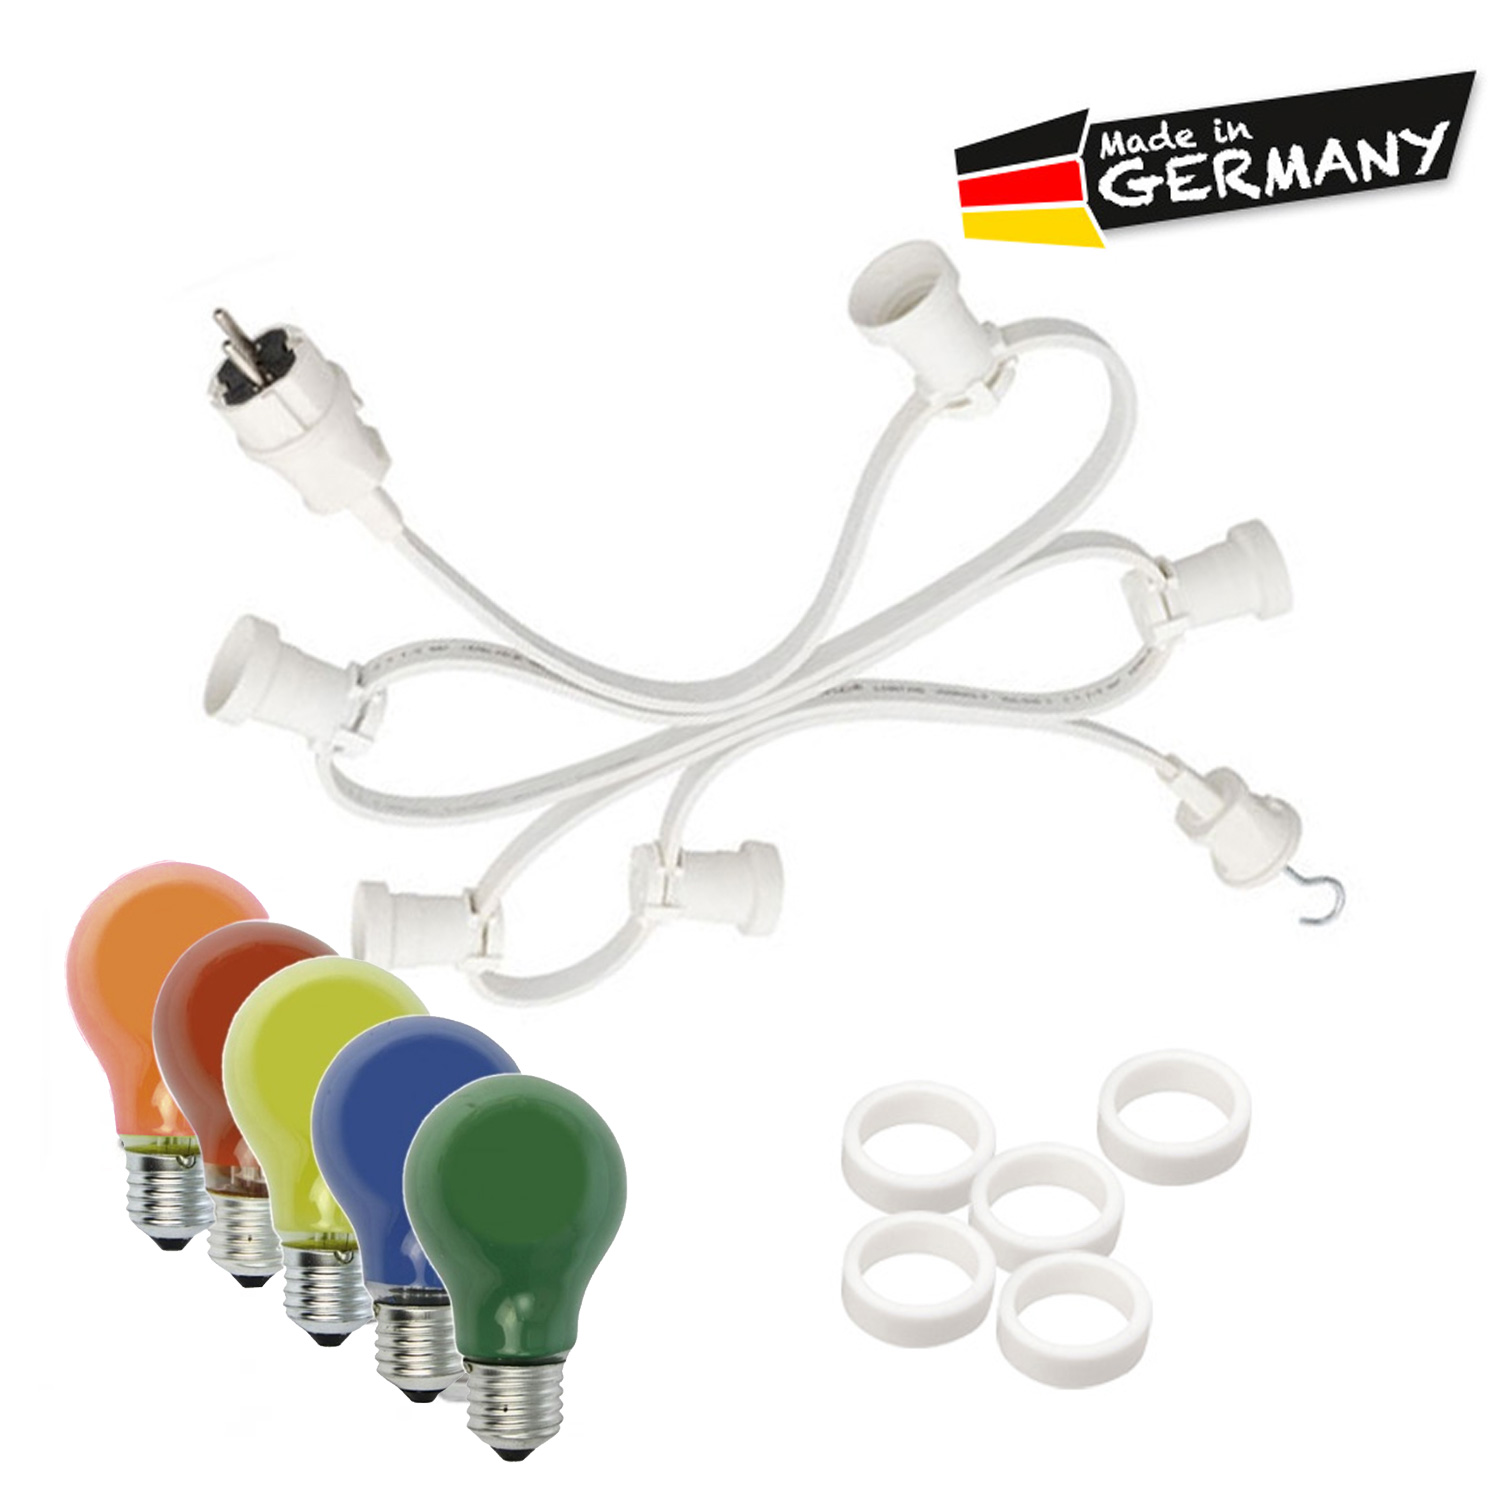 Illu-/Partylichterkette 20m - Außenlichterkette weiß - Made in Germany - 30 x bunte 25W Glühlampen